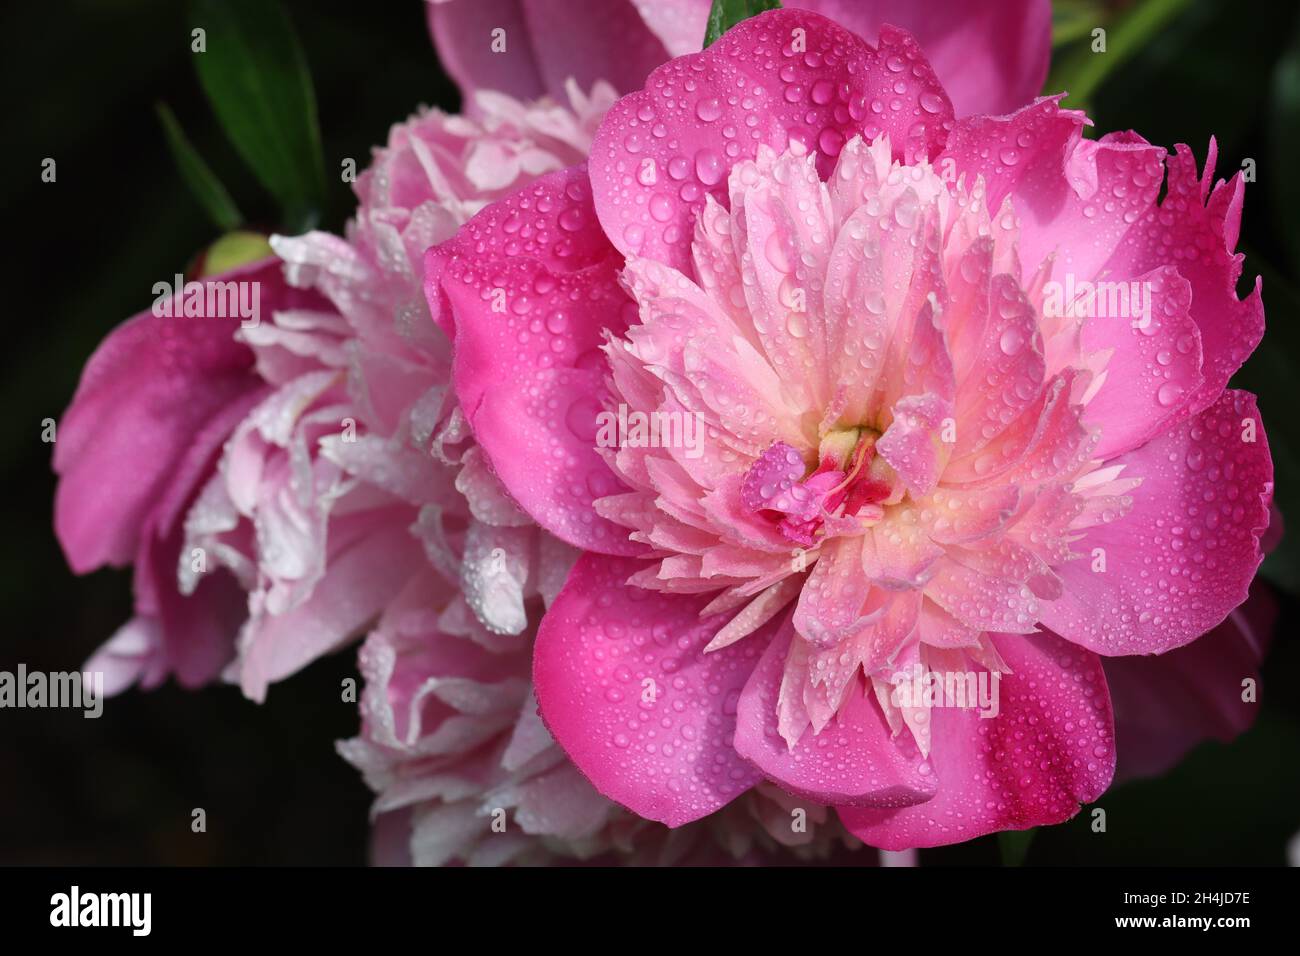 gros plan d'une délicate fleur de pivoine rose parsemée de nombreuses gouttelettes sur un arrière-plan sombre flou Banque D'Images